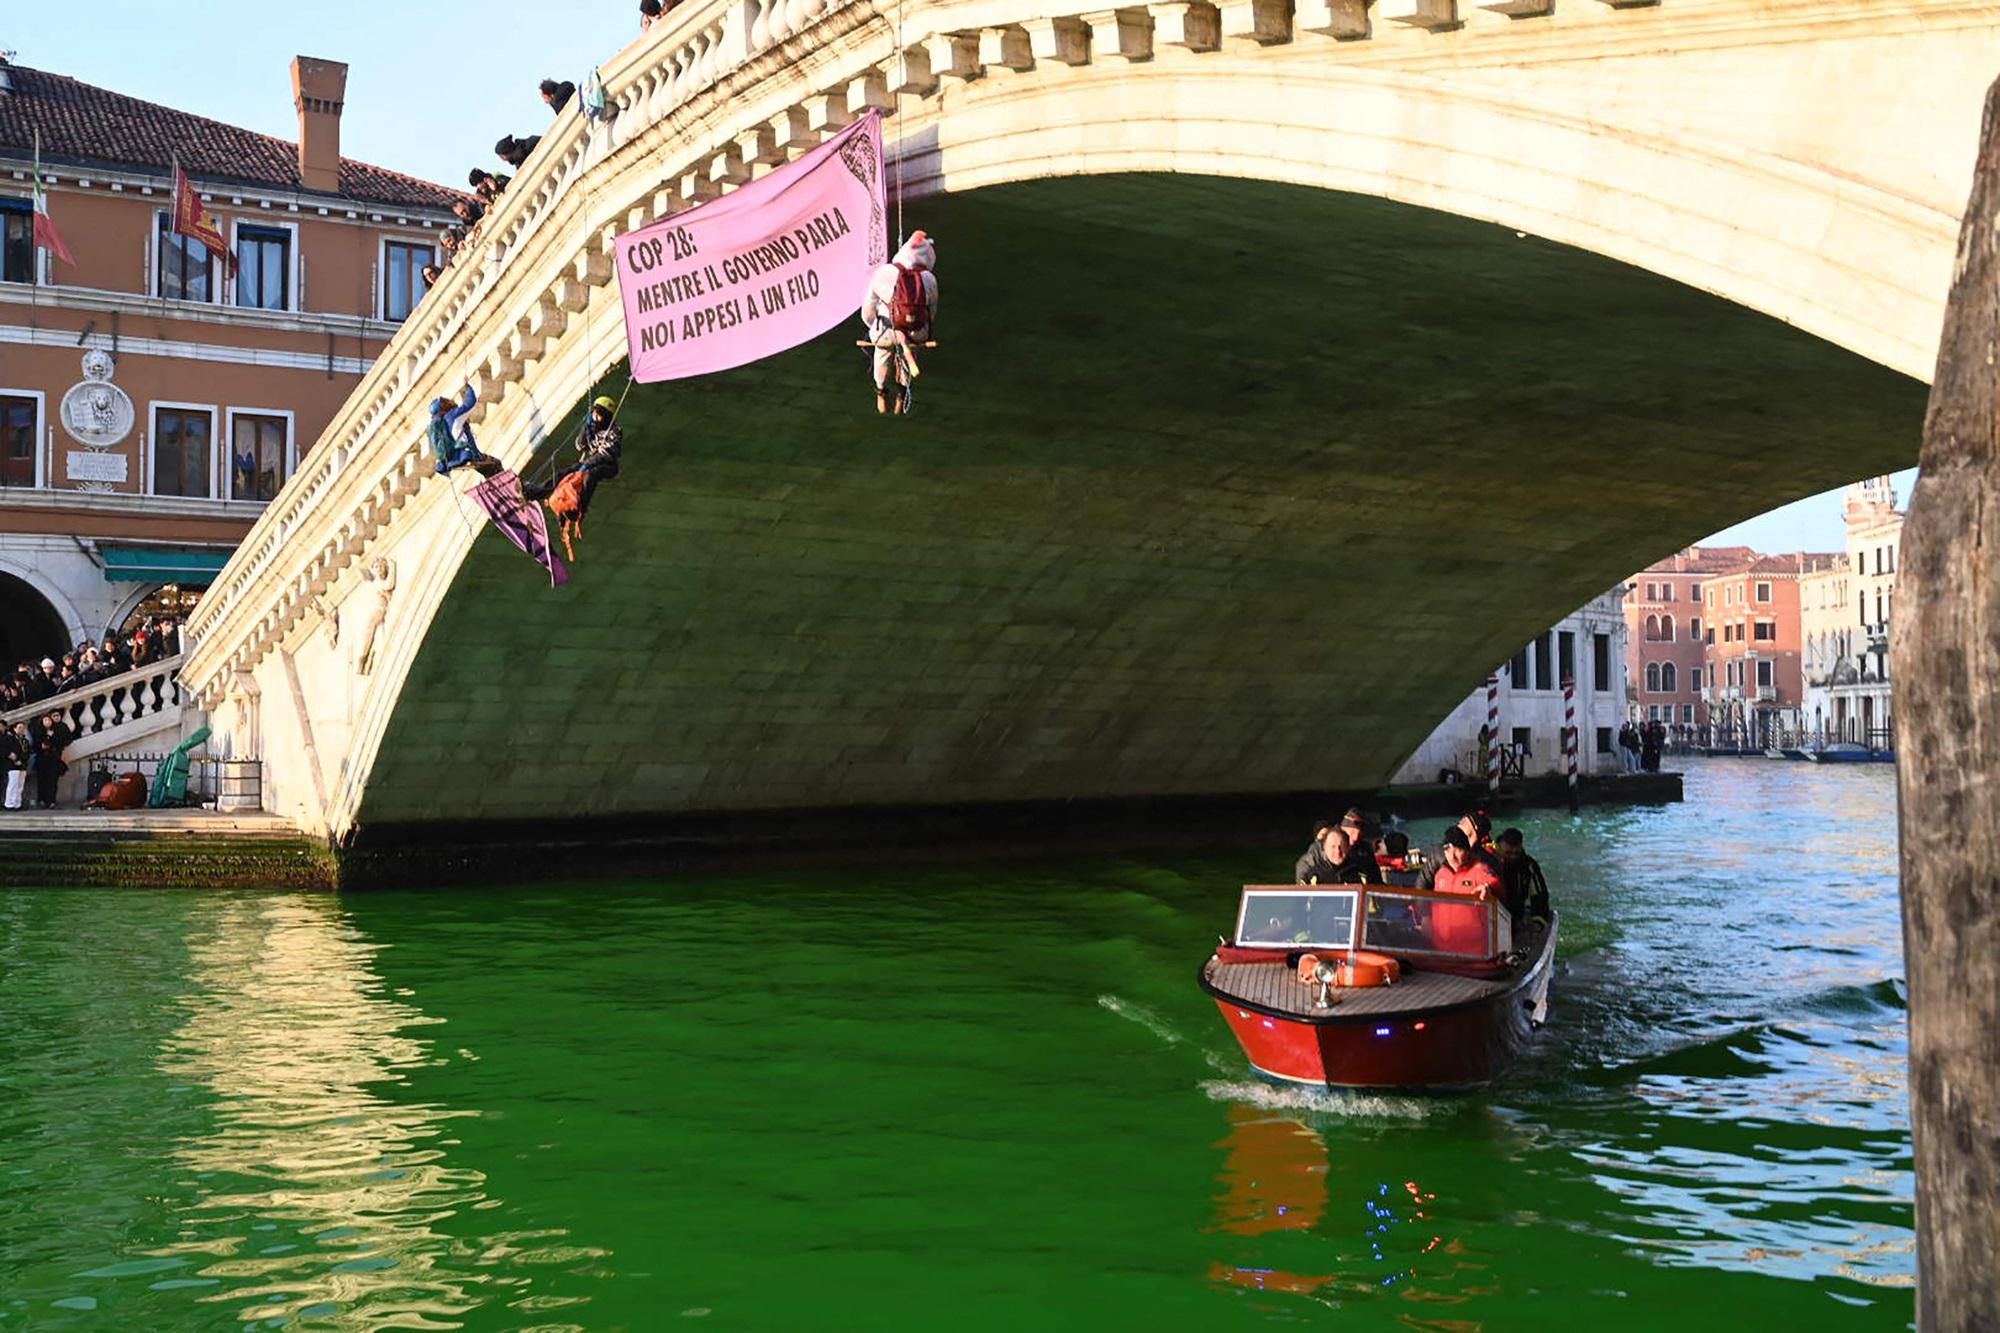 Blitz a Venezia di Extinction Rebellion, foglio di via e Daspo per gli attivisti